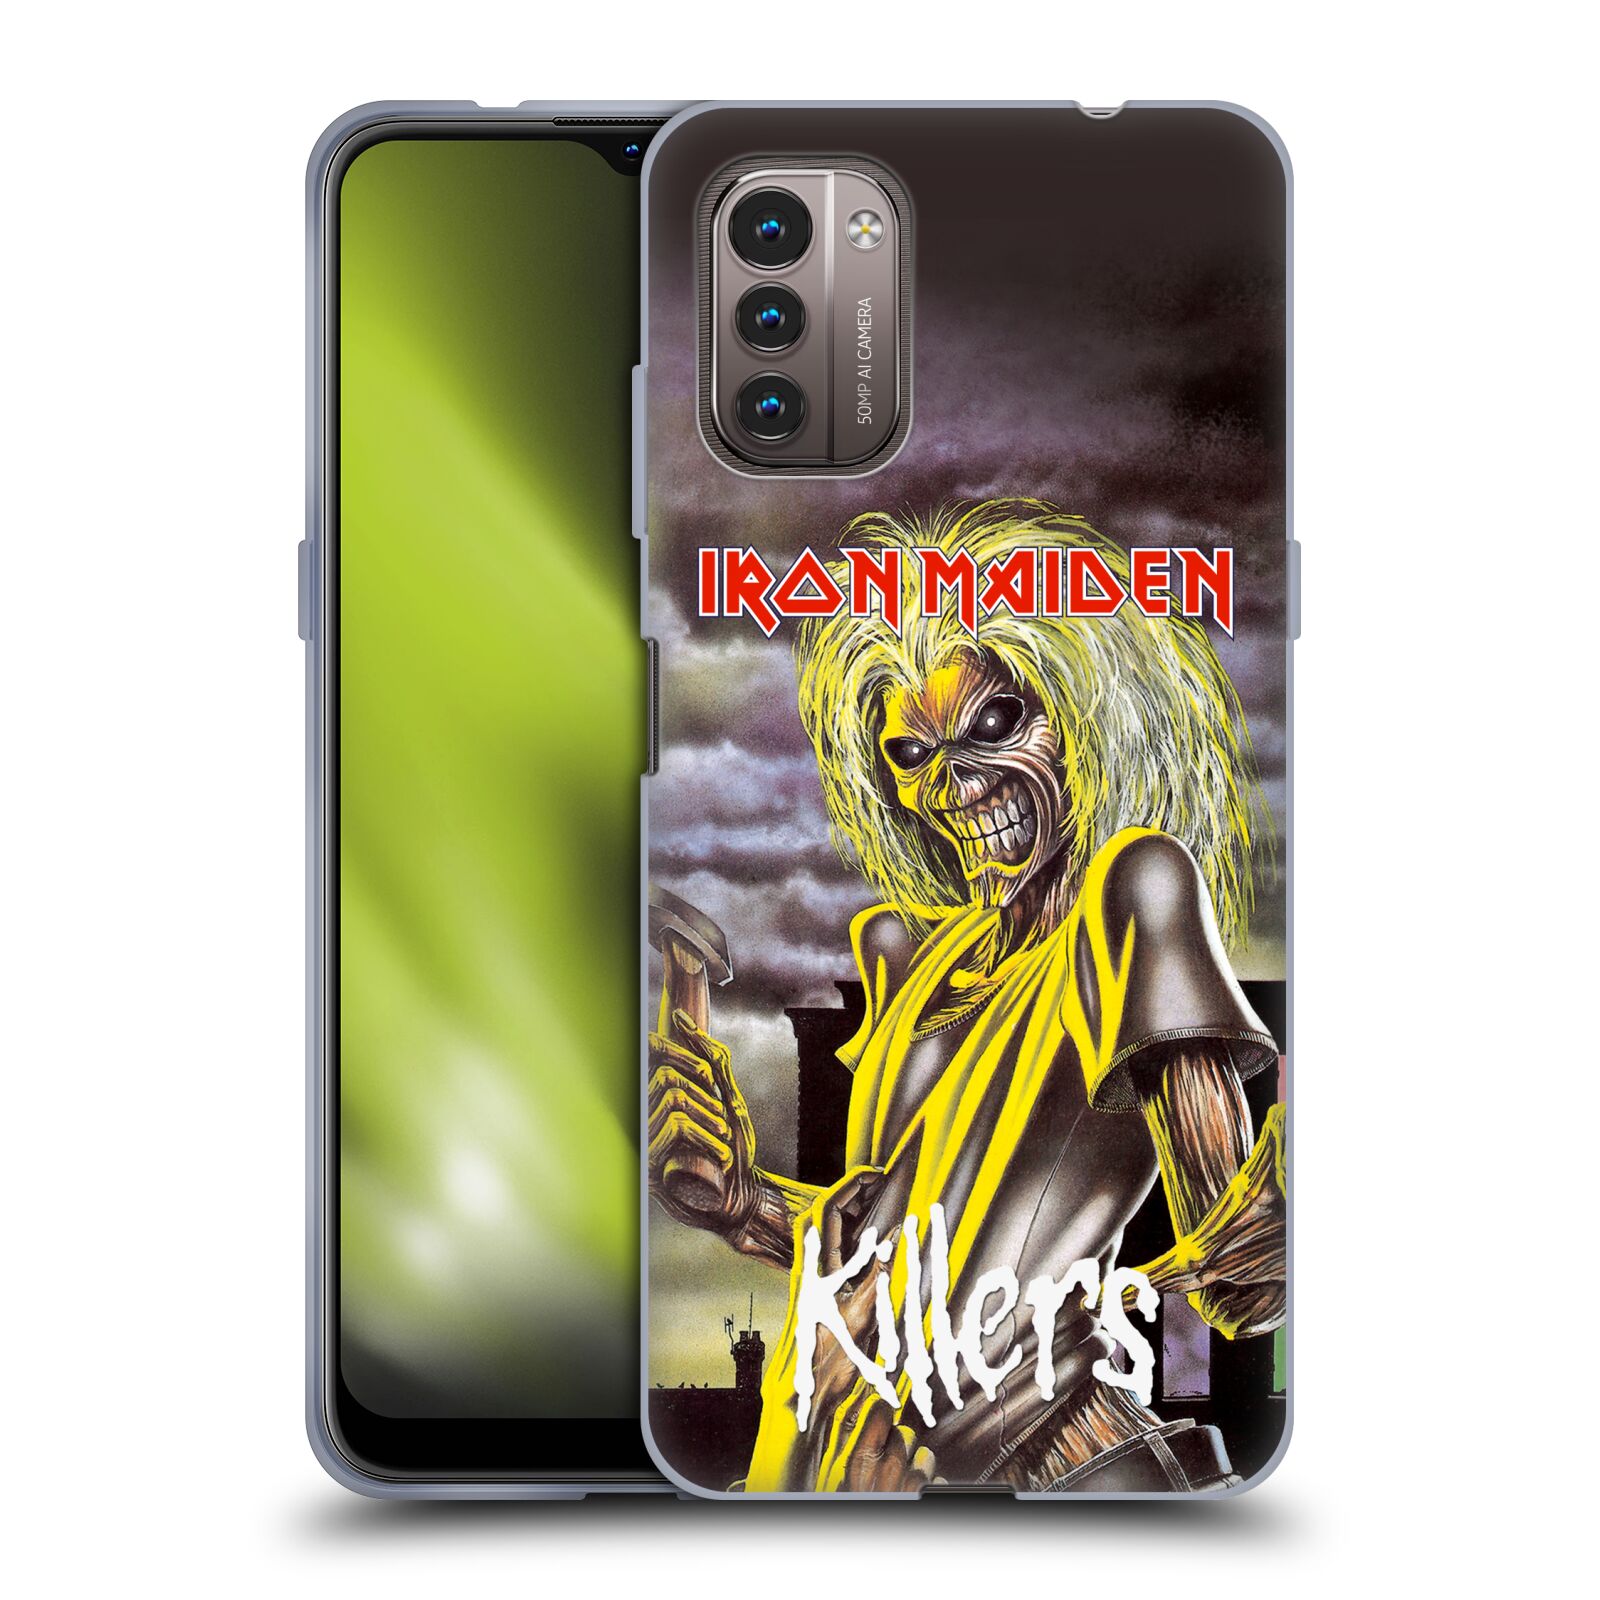 Silikonové pouzdro na mobil Nokia G11 / G21 - Head Case - Iron Maiden - Killers